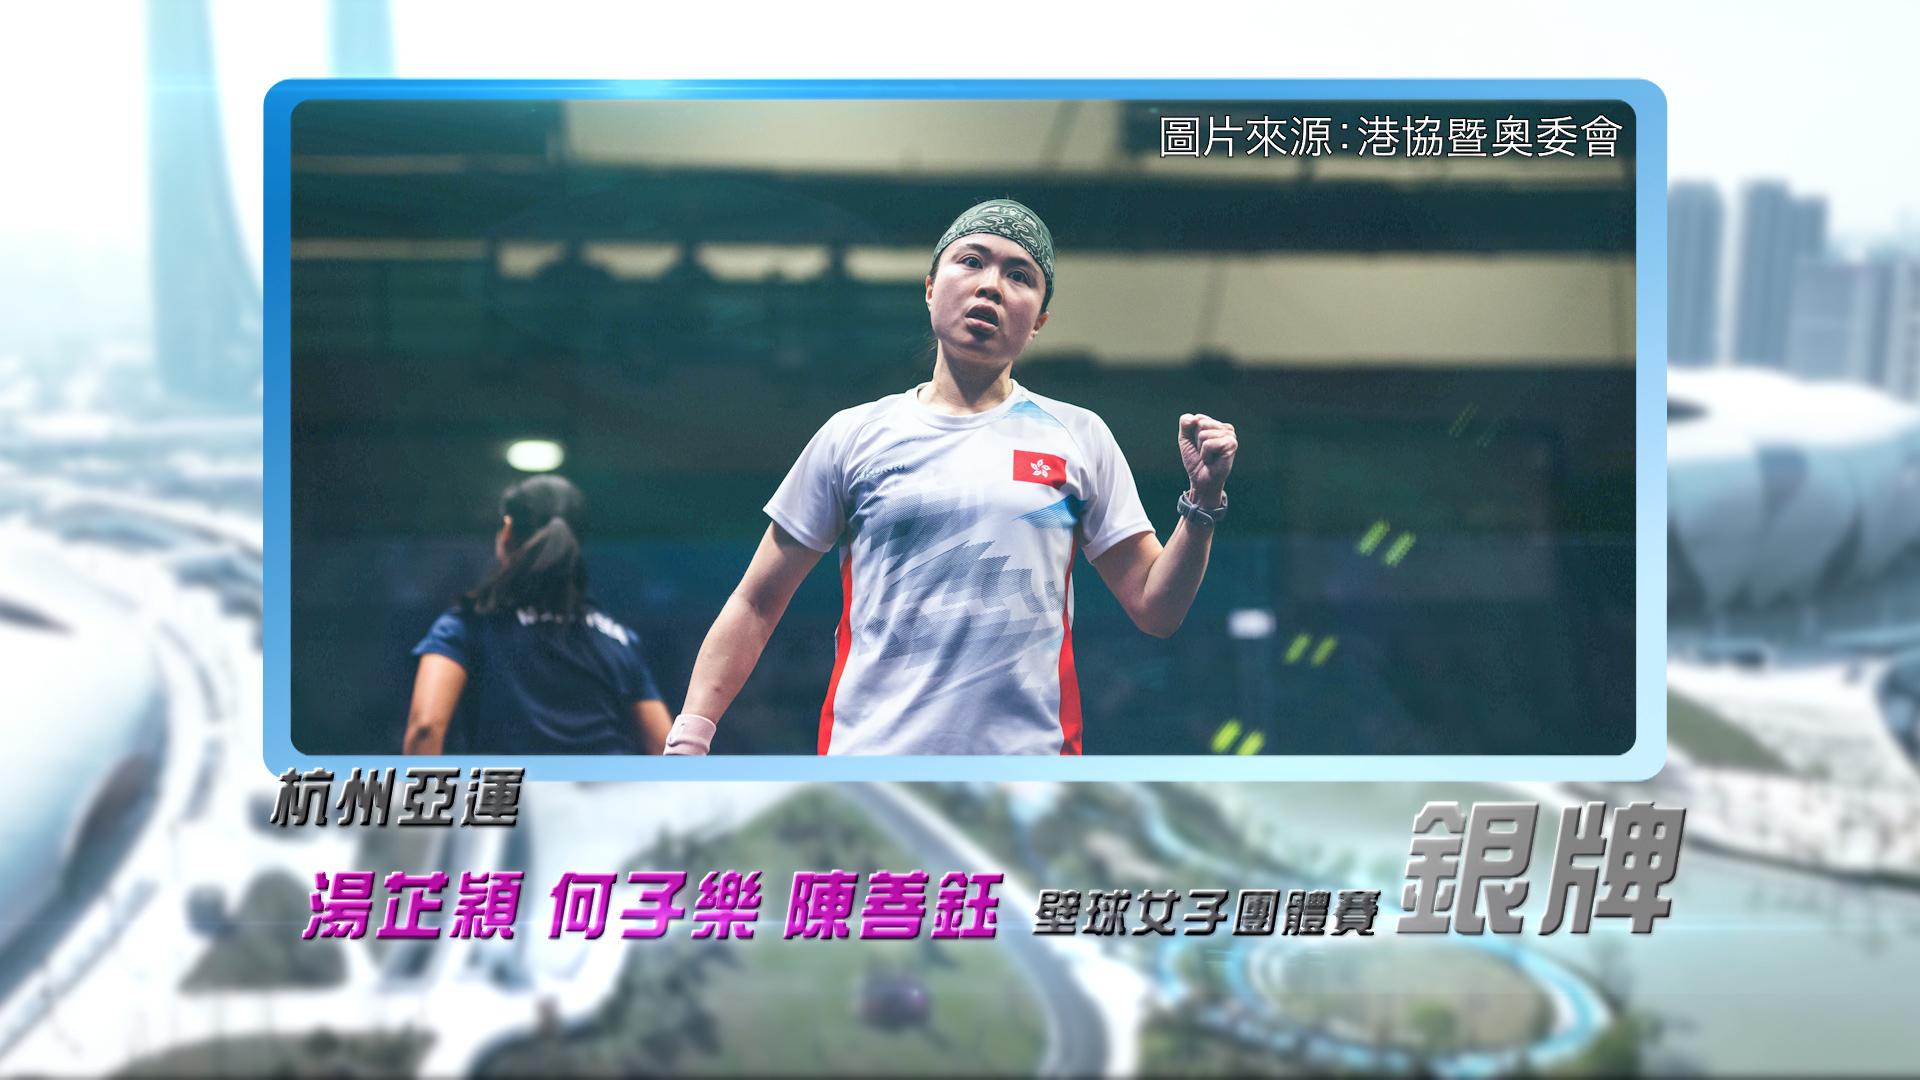 恭喜汤芷颖、何子乐、陈善钰于杭州亚运壁球女子团体赛获得银牌